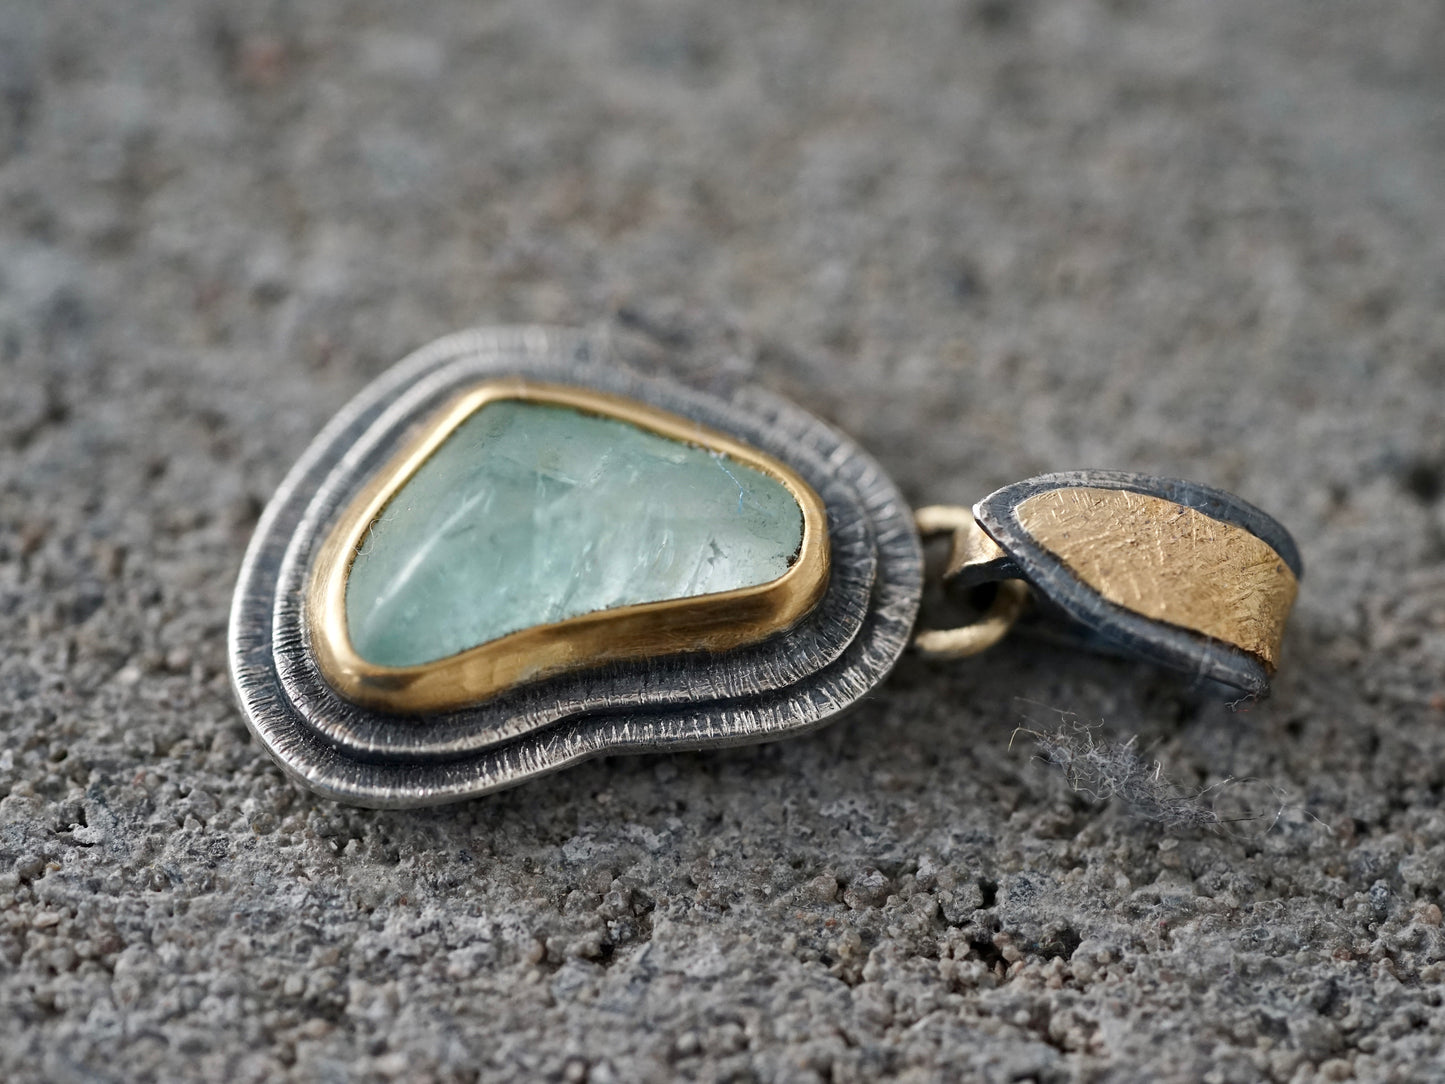 Organic aquamarine and gold pendant